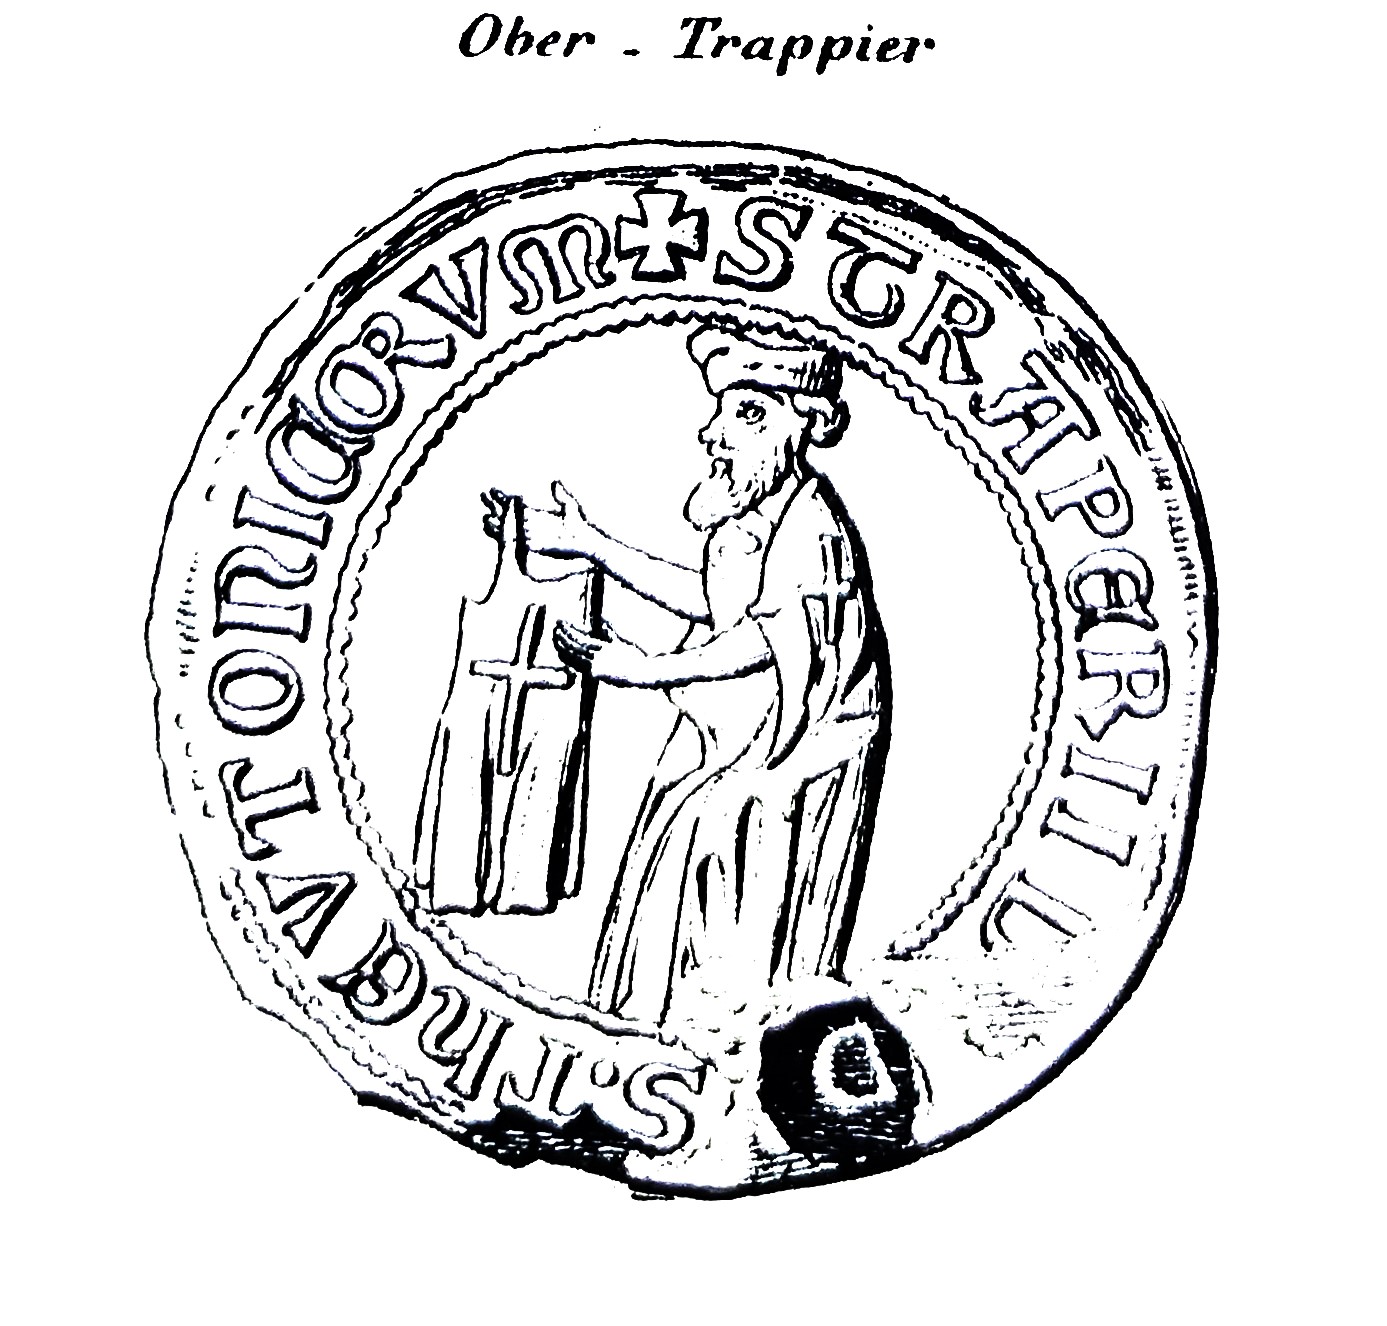 Das Bild zeigt eine schematische Darstellung des Siegels des Obersten Trappiers. Darauf abgebildet ist eine Person in Ordensgewandung mit einem Kleidungsstück in den Händen